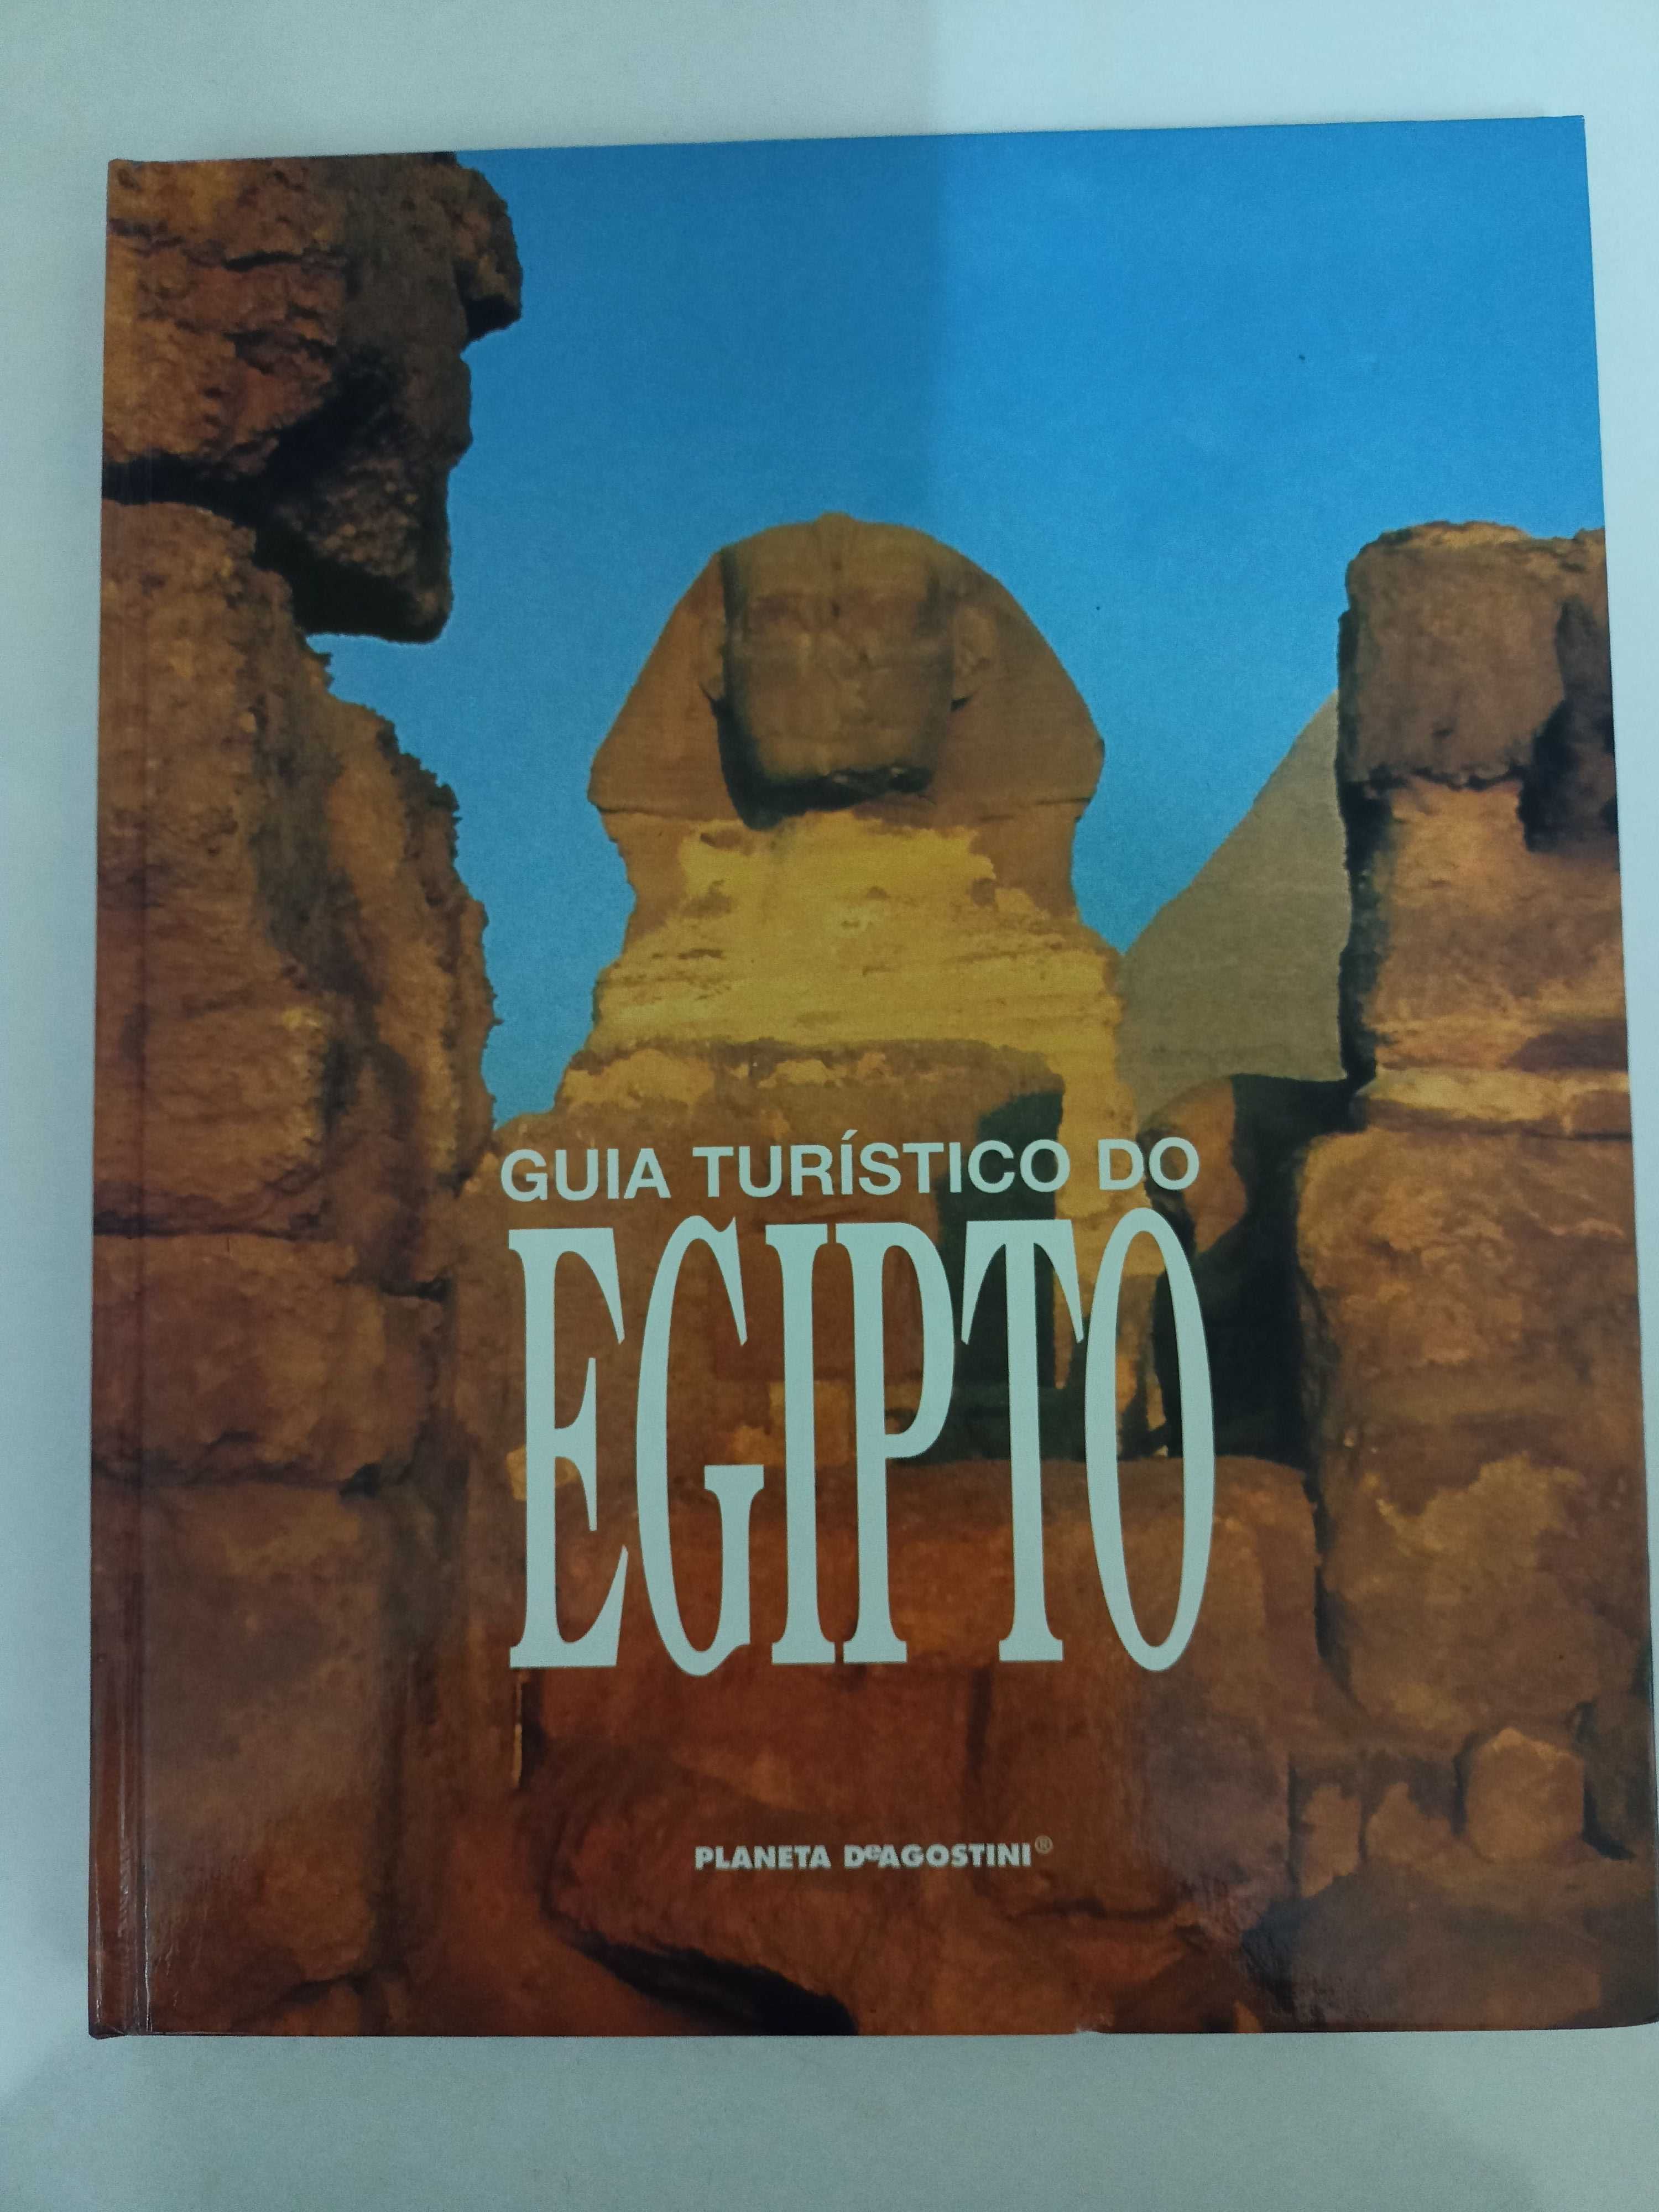 Colecção EGIPTO (Planeta Agostini) 8 Volumes e 24 Cassetes VHS